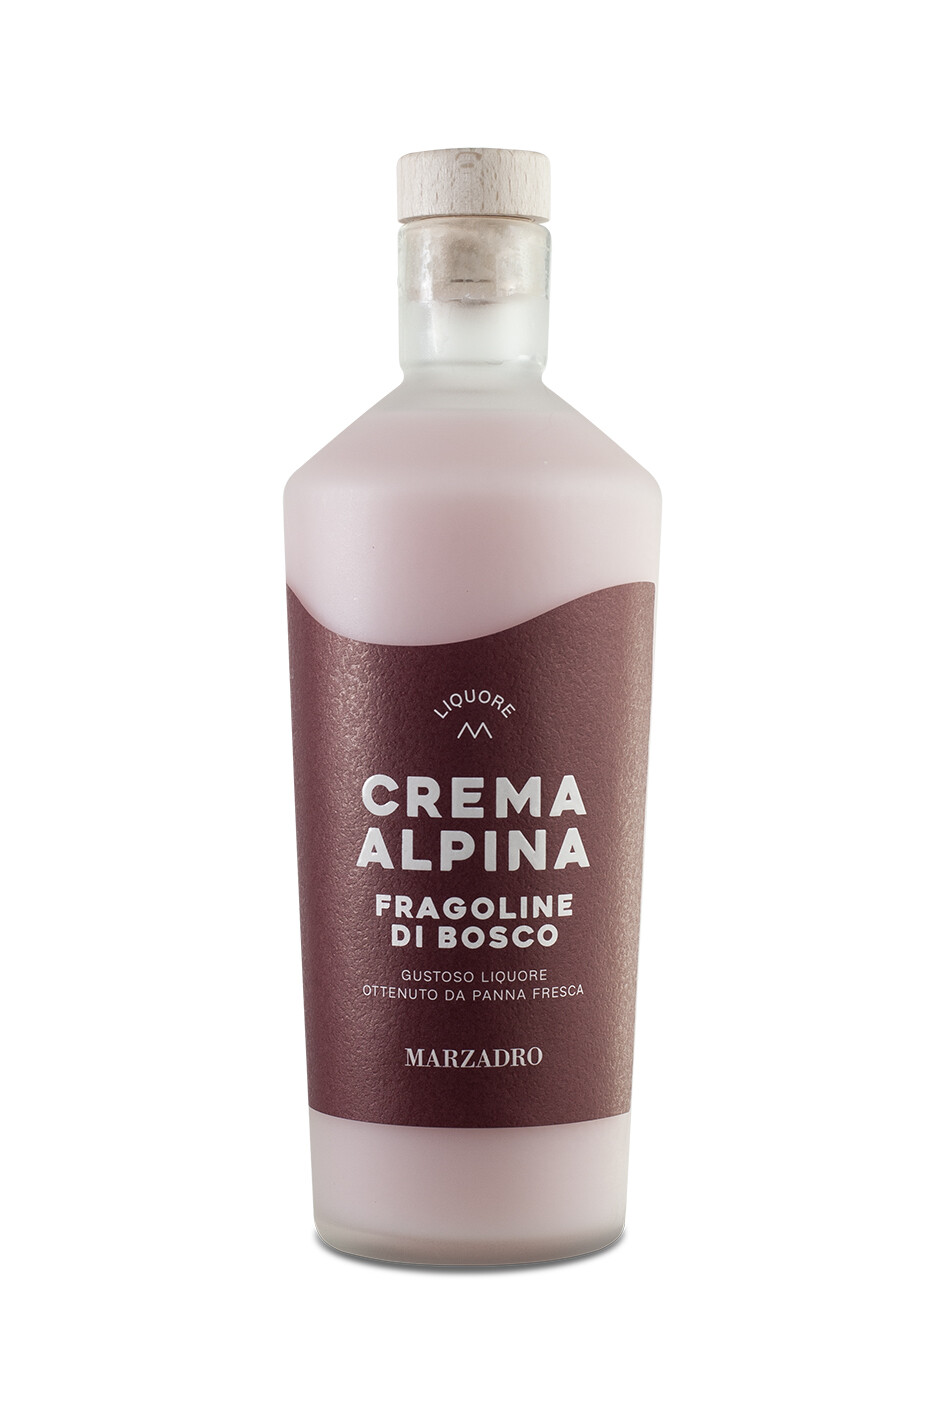 Crema Alpina Fragoline Di Bosco Liquore